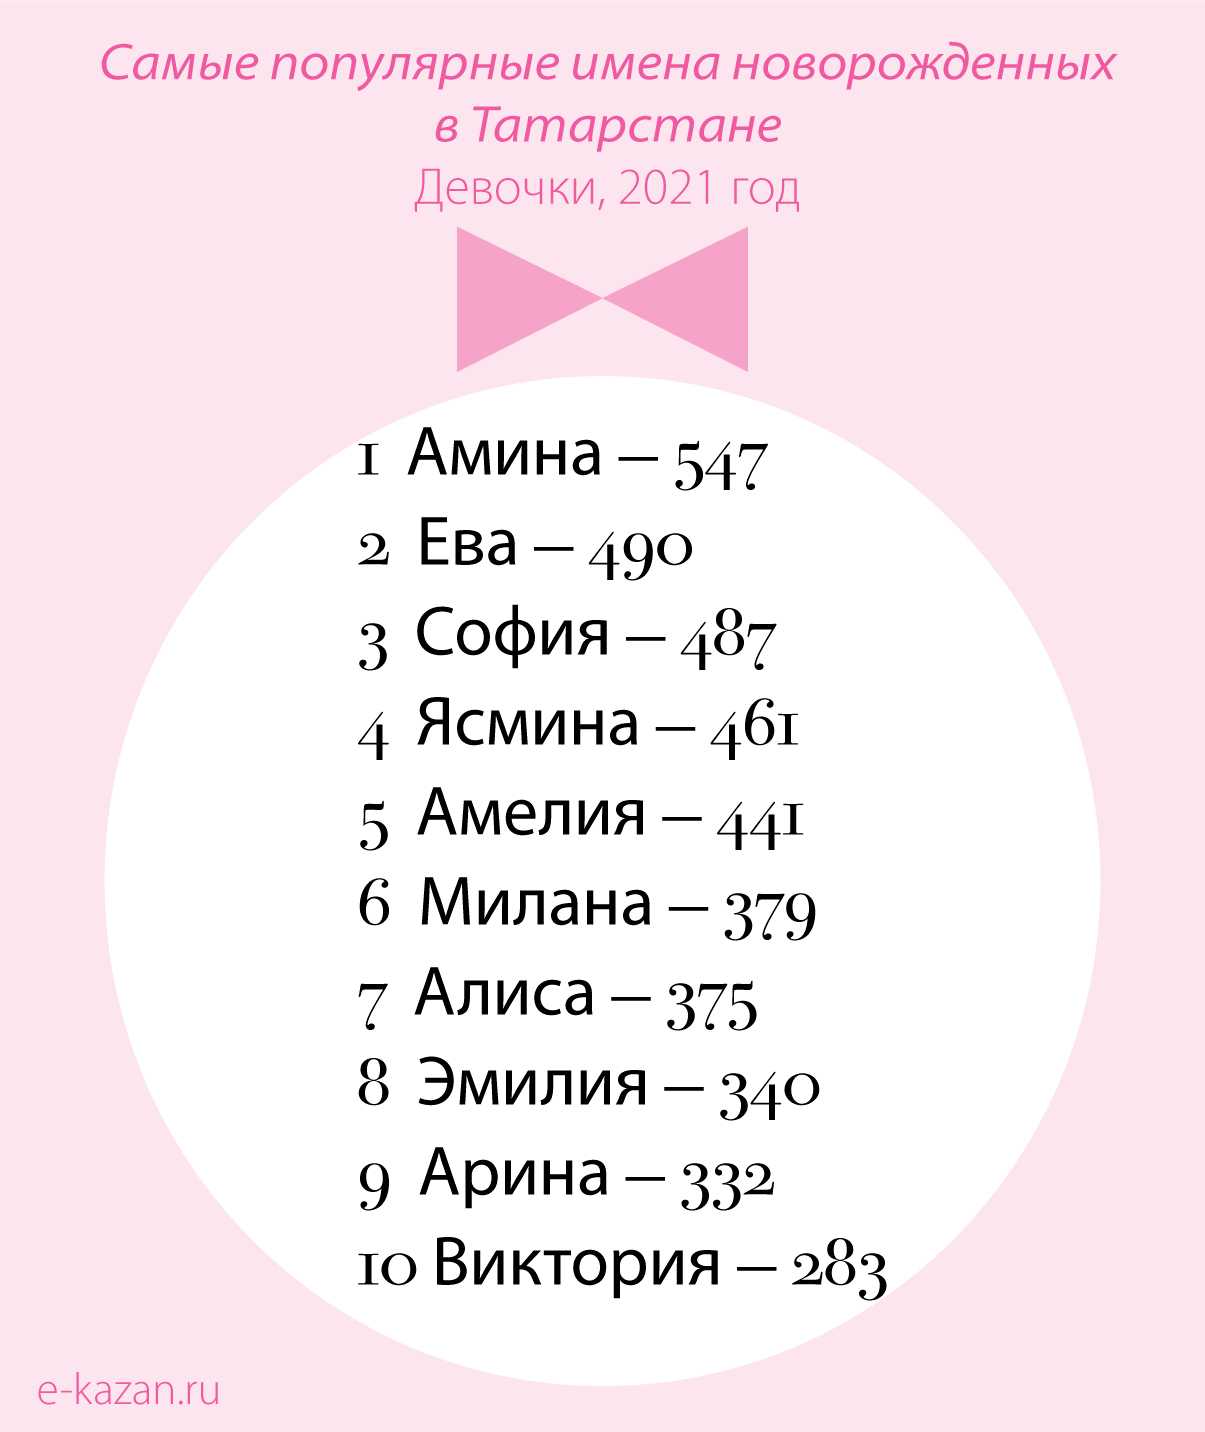 Какое имя в россии самое популярное женское. Самые попклярнвеимена. Самые популярные имена. Популярные имена для девочек. Самые популярные имена для девочек.